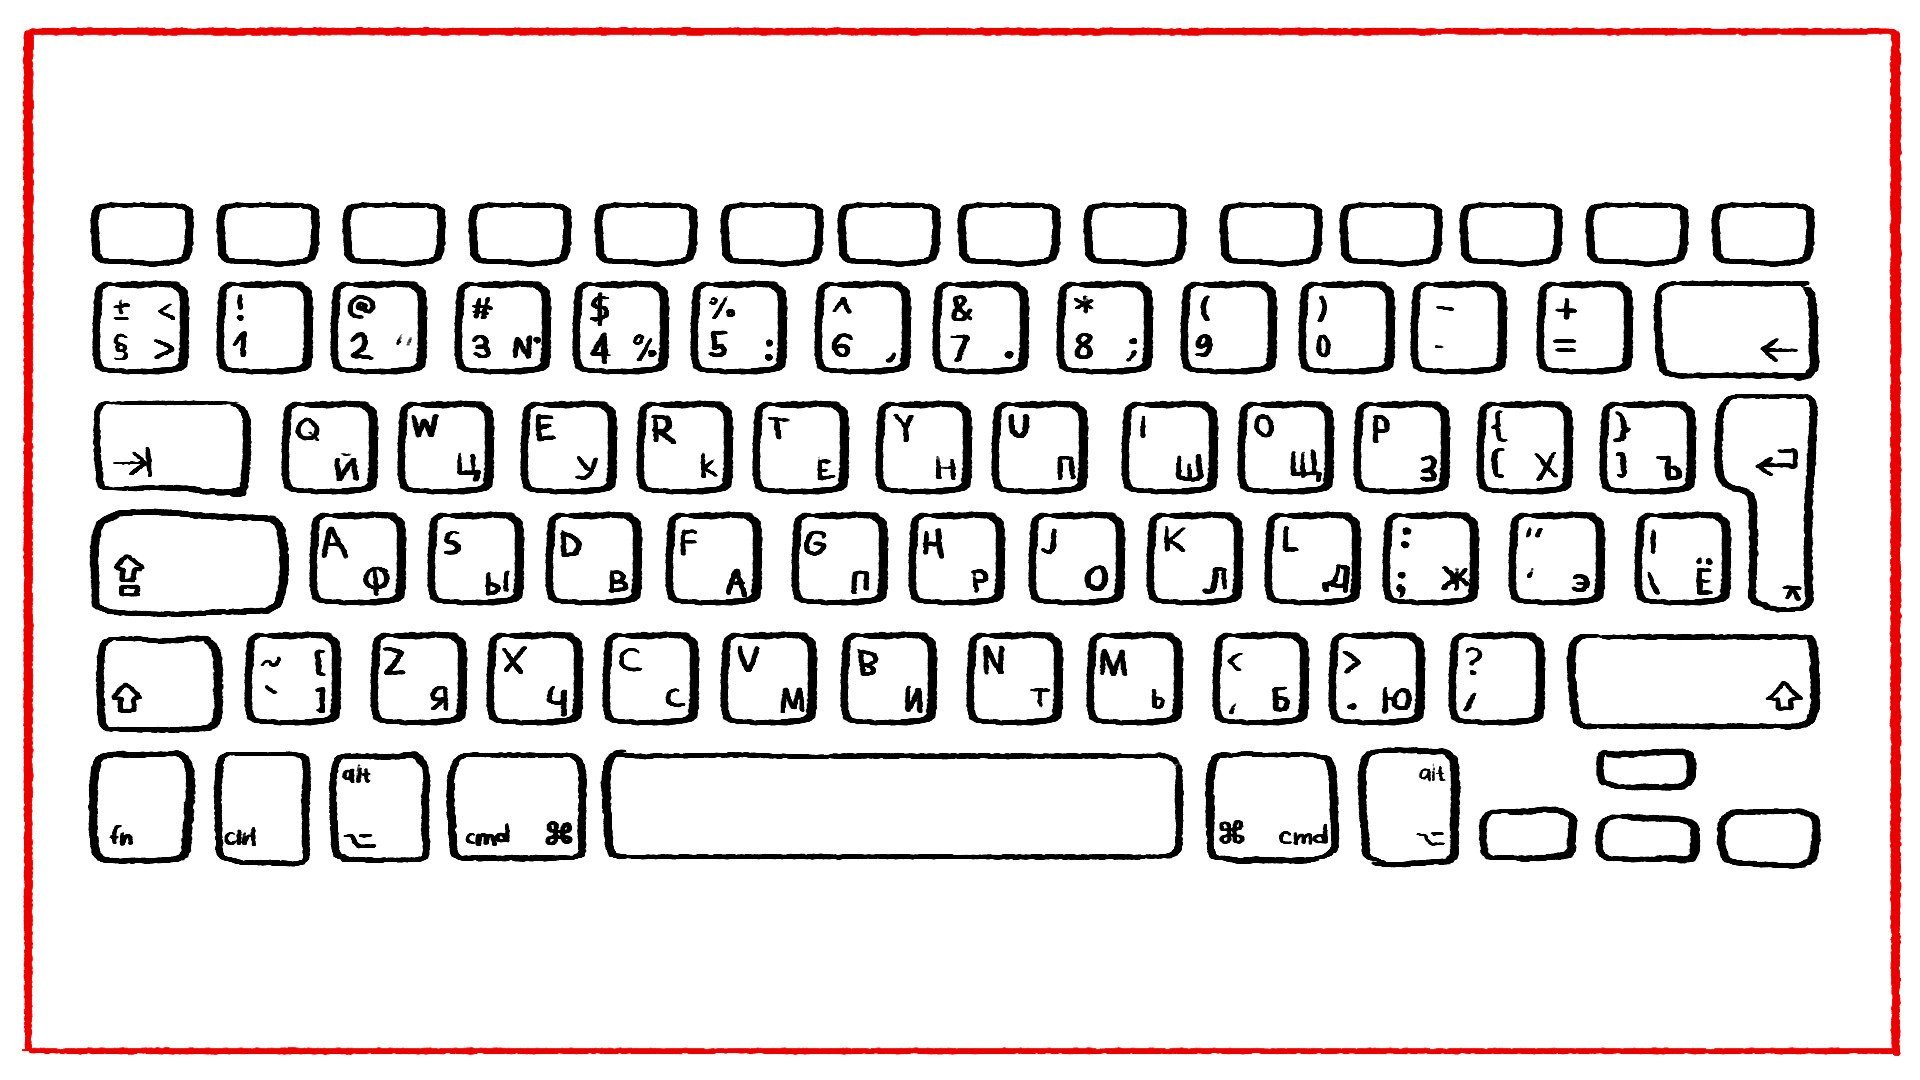 Изображение клавиатуры компьютера